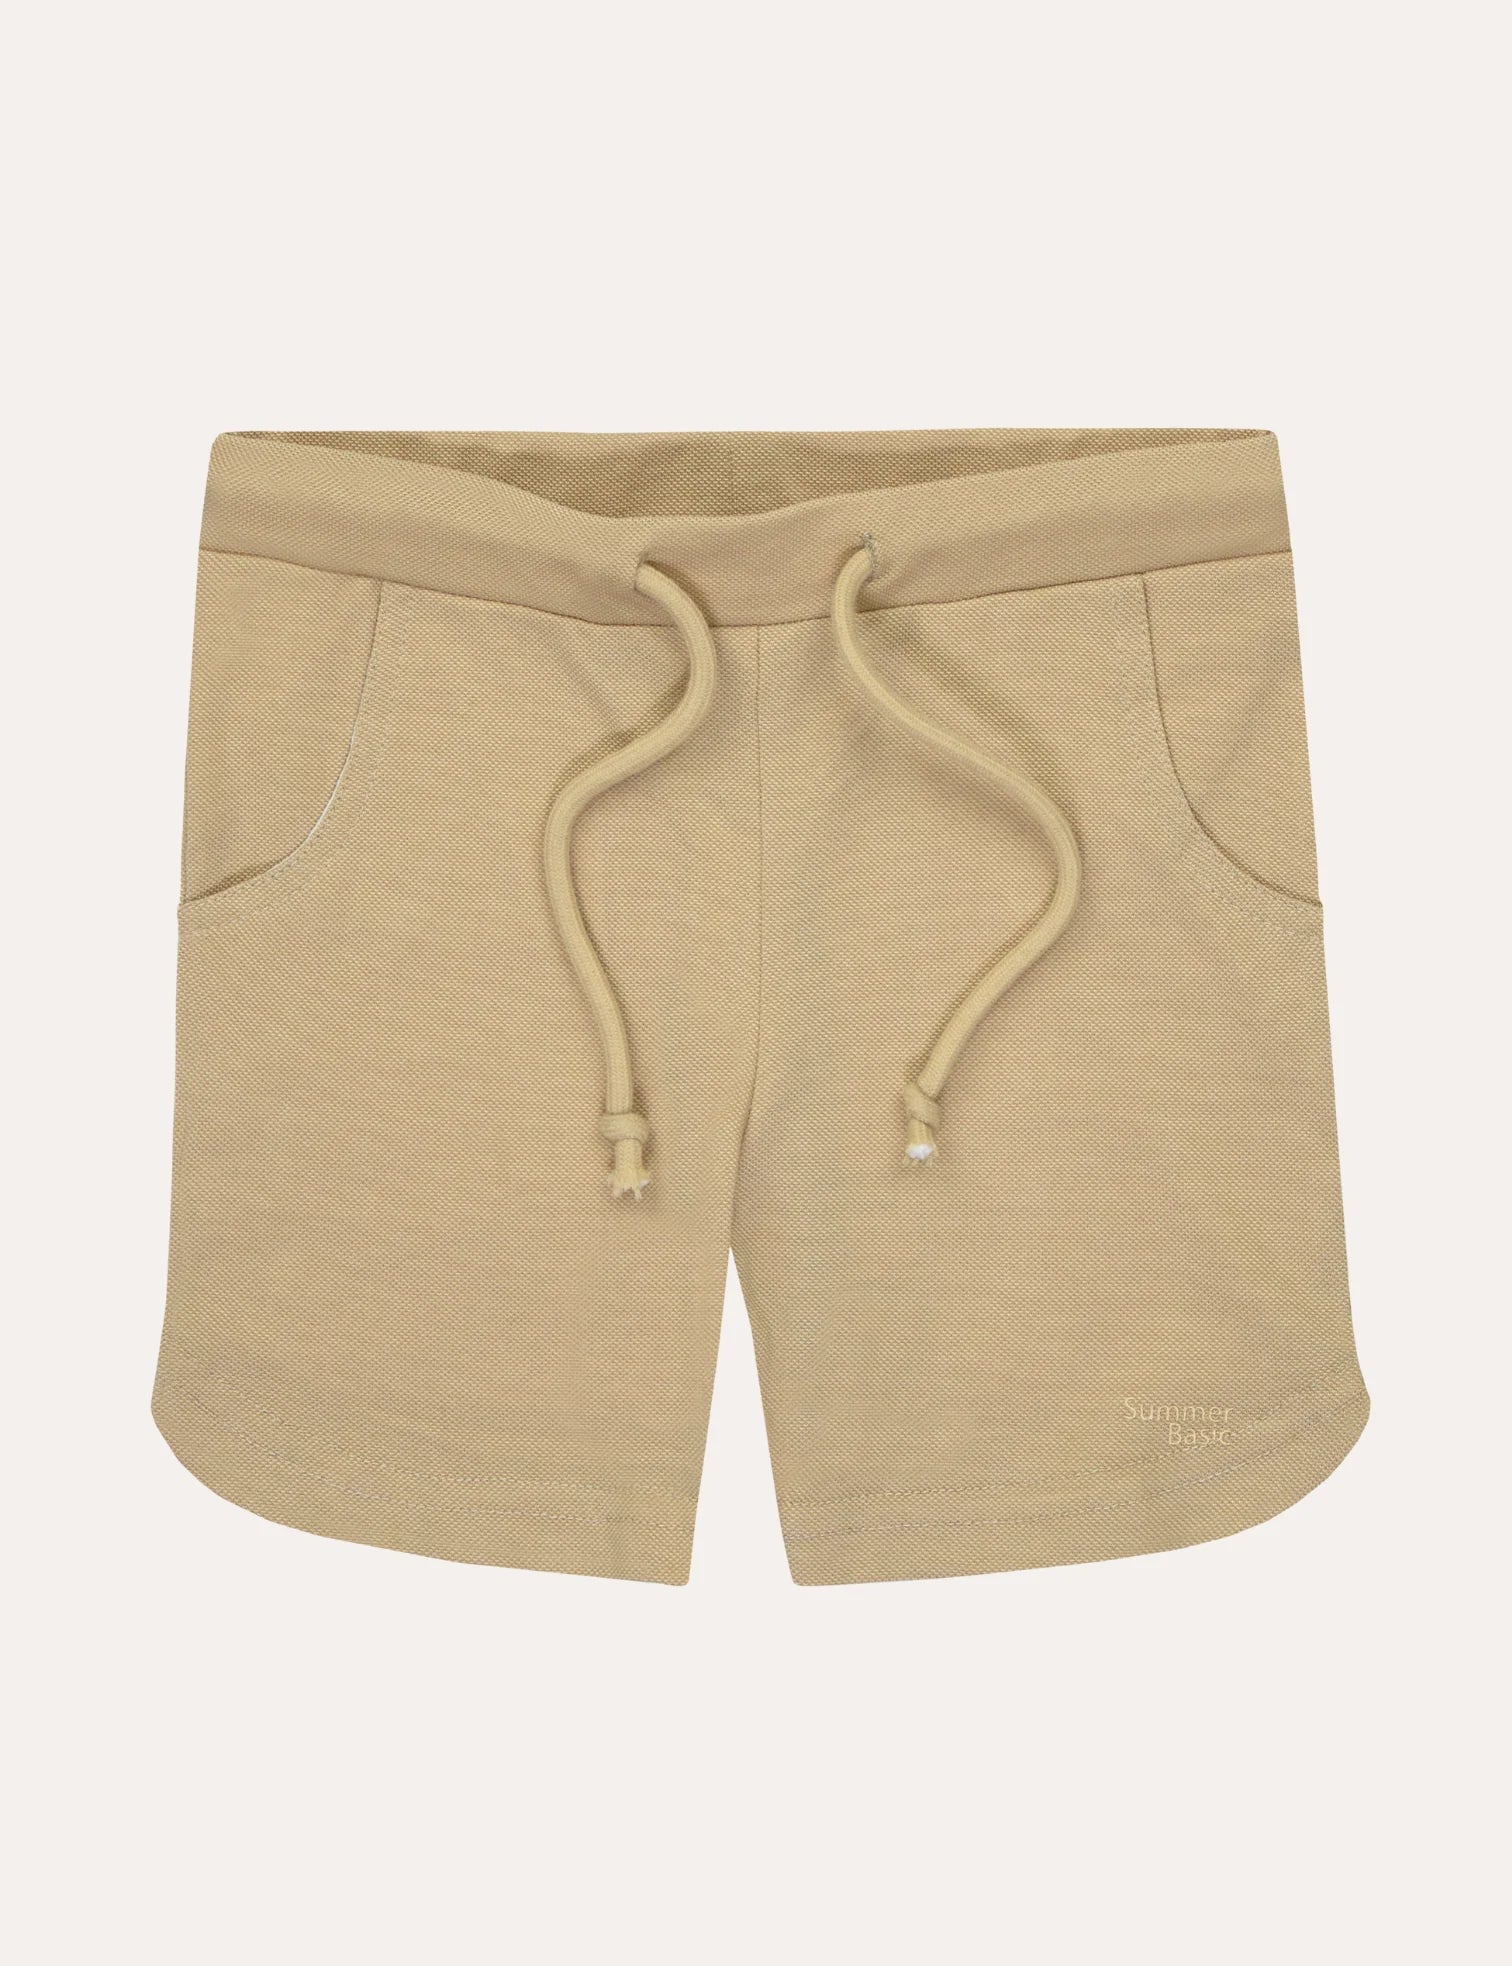 Pique Shorts - Tan